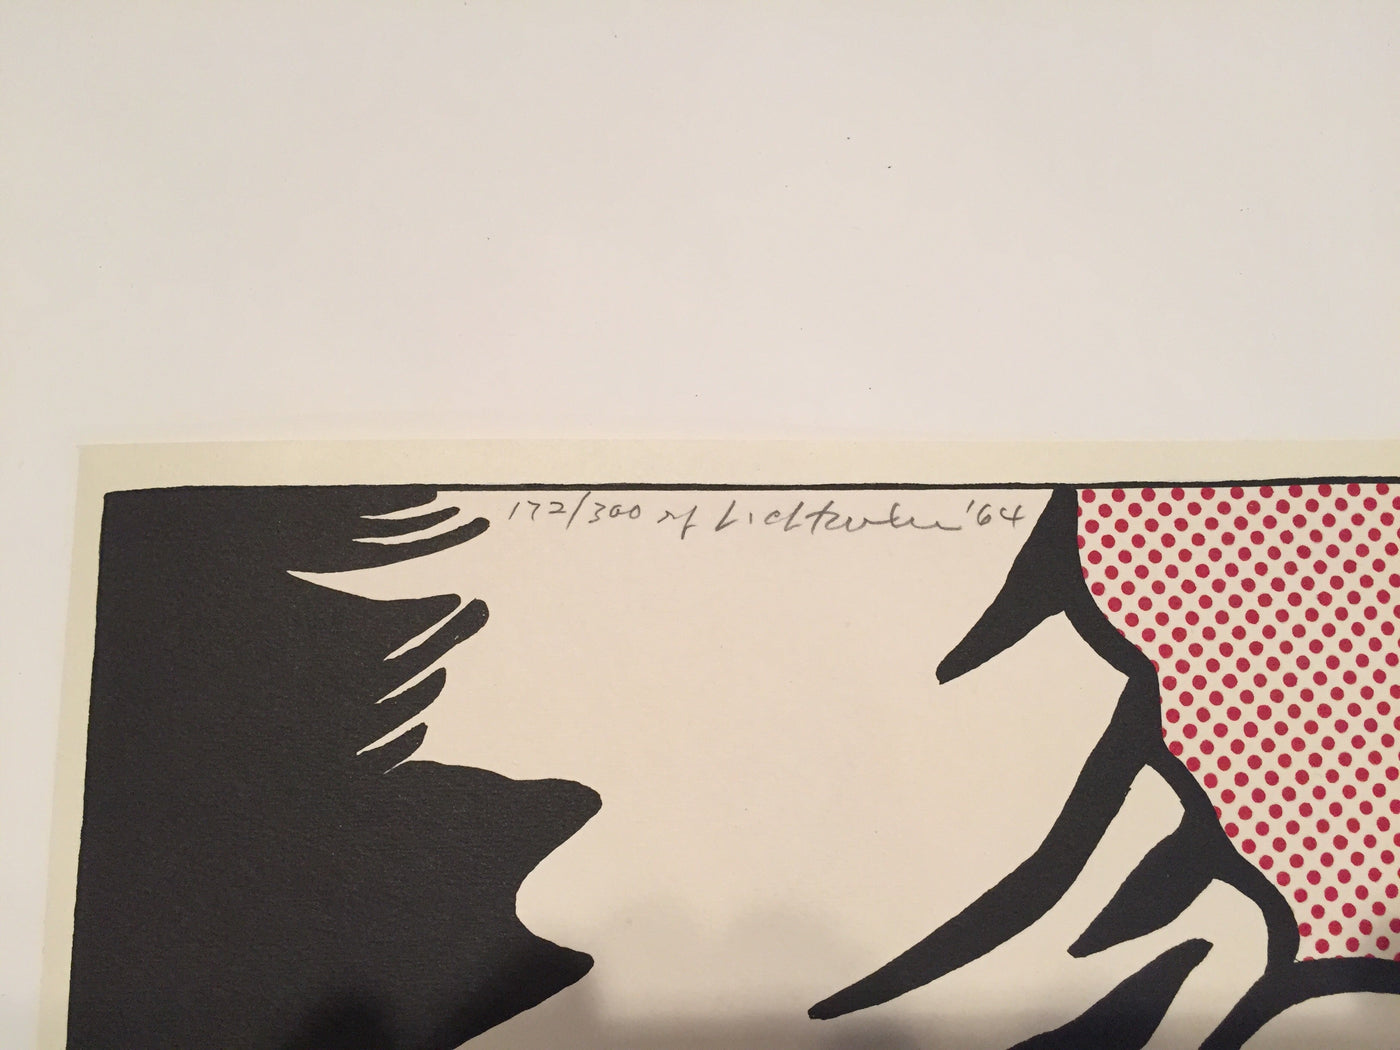 Roy Lichtenstein Foot and Hand (Corlett II.4) 1964